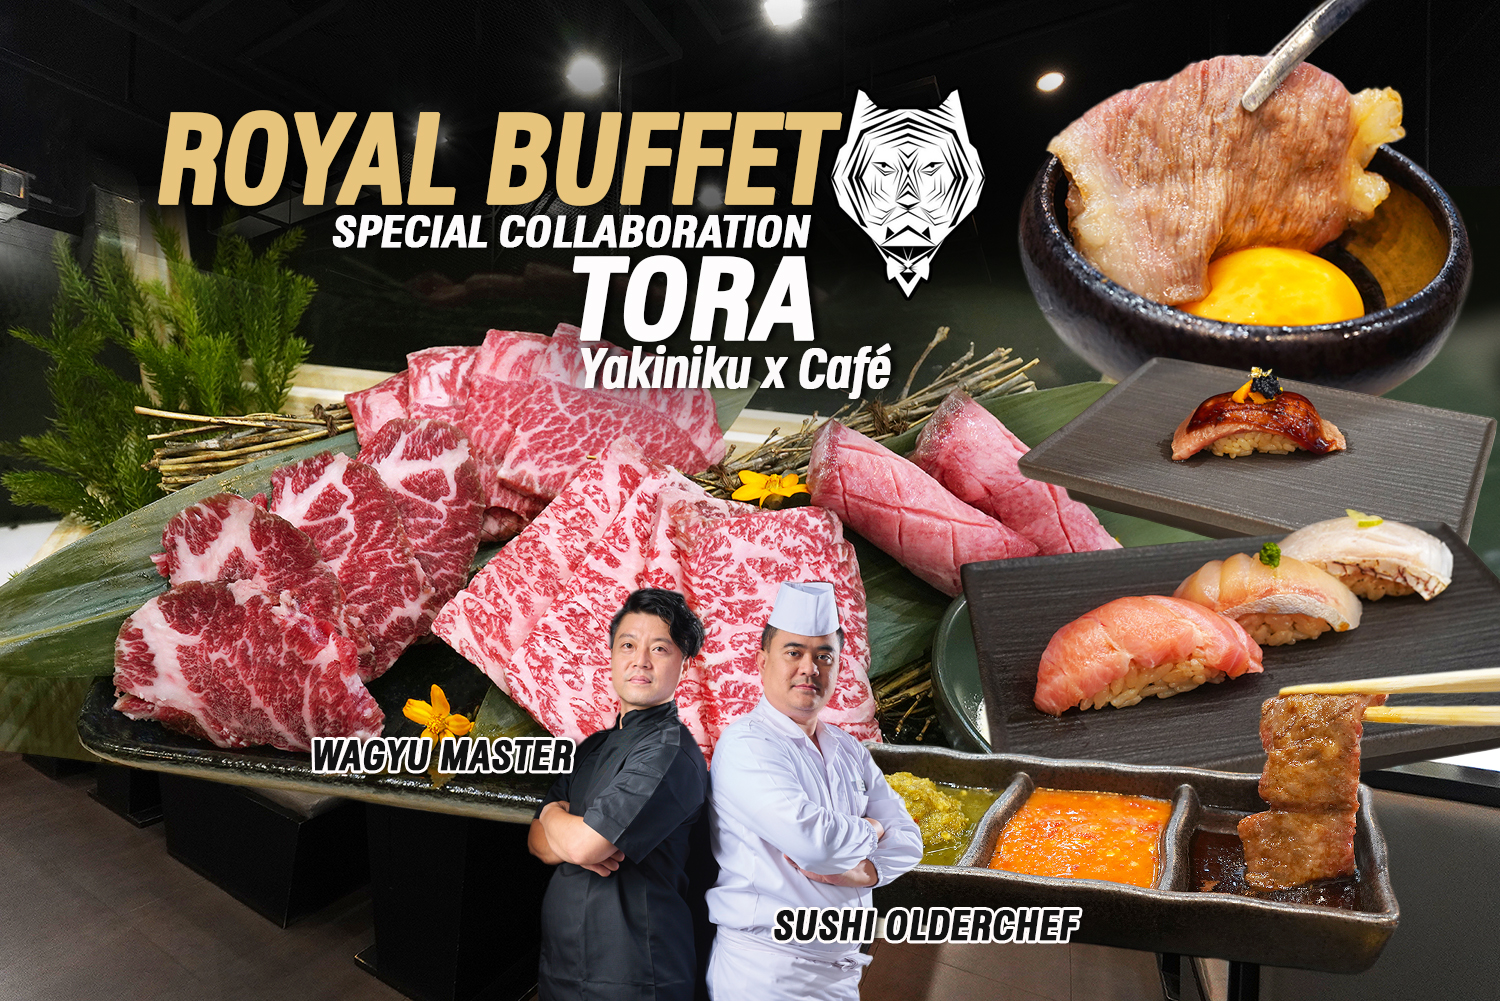 RAYAL BUFFET SPECIAL COLLABORATION Wagyu Master x Sushi Olderchef TORA Yakiniku x Cafe 0